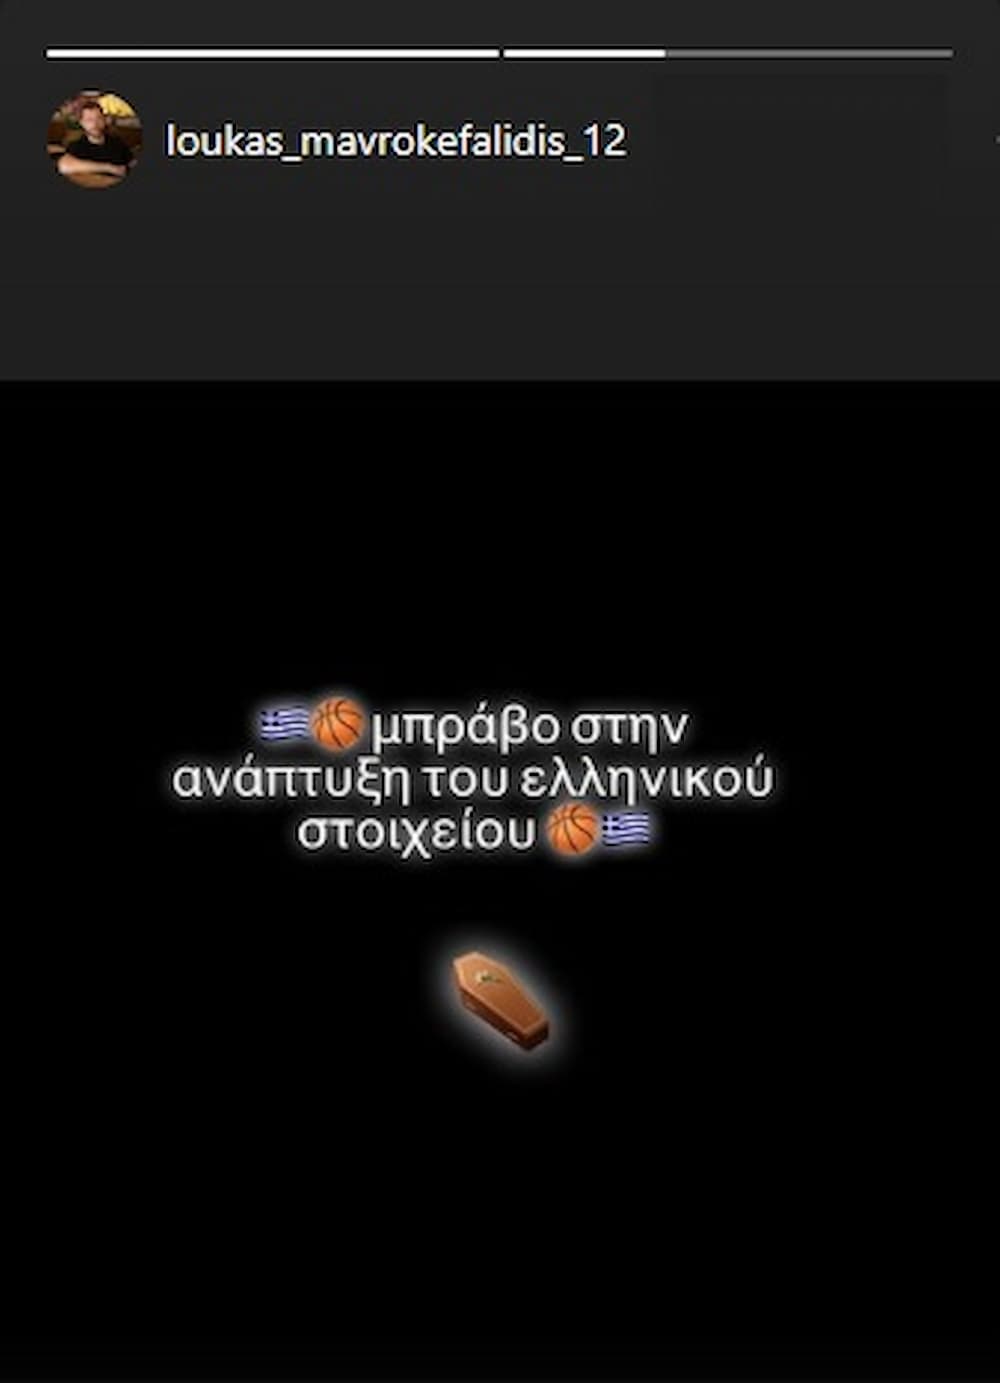 Μαυροκεφαλίδης κατά της απόφασης για Γουόκαπ: «Μπράβο στην ανάπτυξη του ελληνικού στοιχείου» (εικόνα)